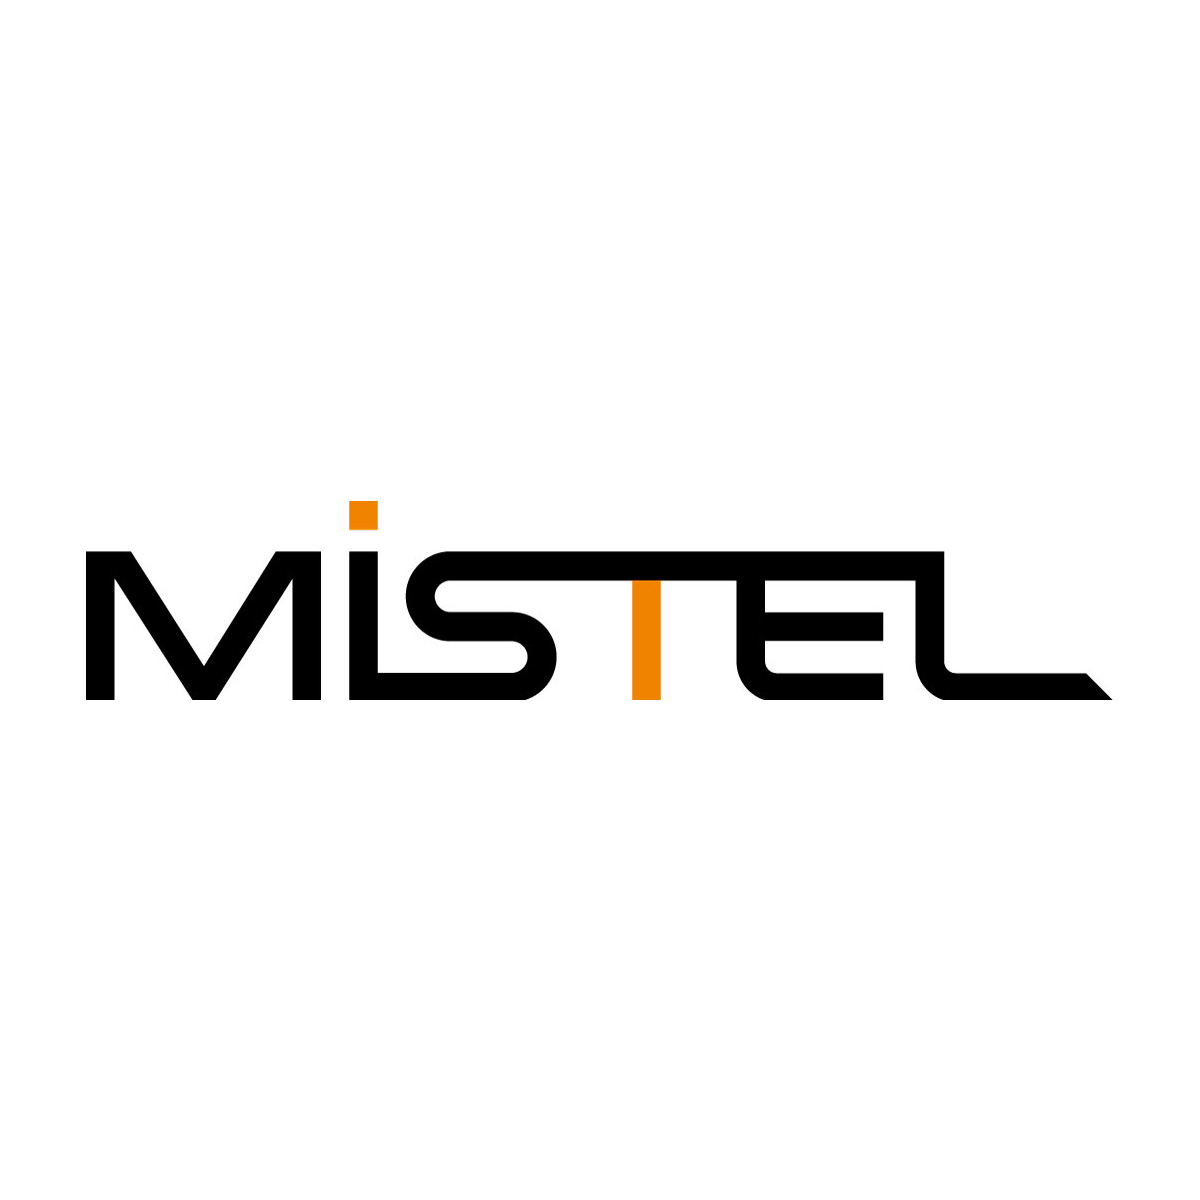 Mistel（ミステル）- メカニカルキーボード - 株式会社アーキサイト